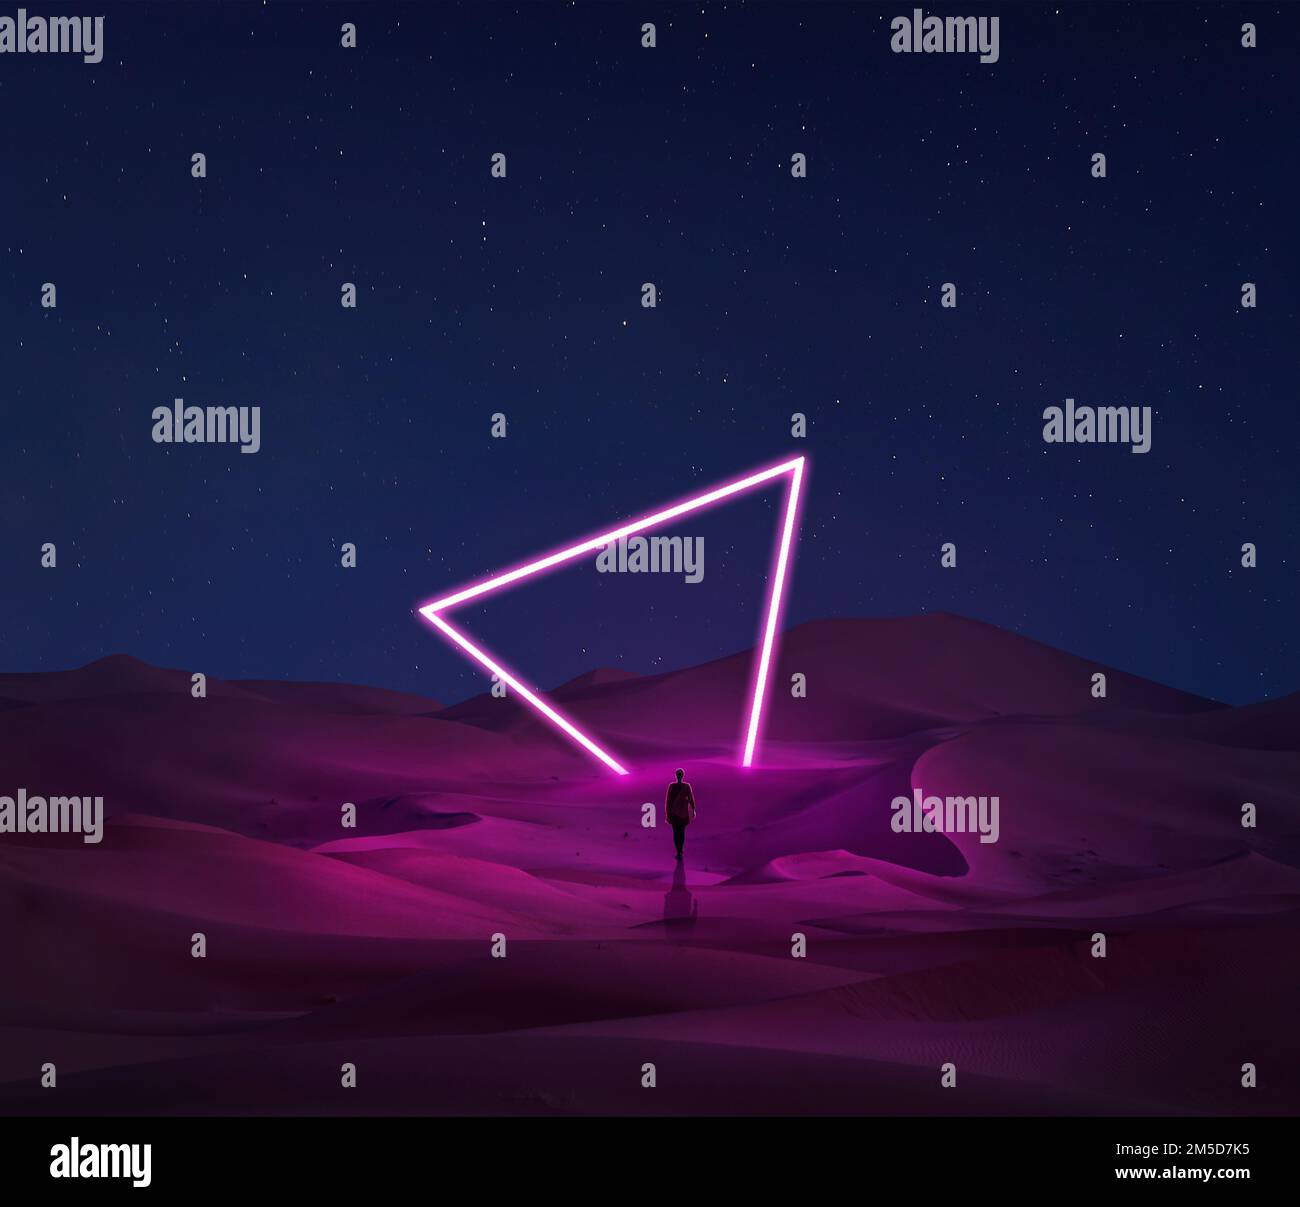 Moderner futuristischer Neon-abstrakter Hintergrund. Großes Dreieck leuchtendes violettes Objekt im Zentrum der Sanddüne und die Silhouette der einsamen Frau, die in der schwebt Stockfoto